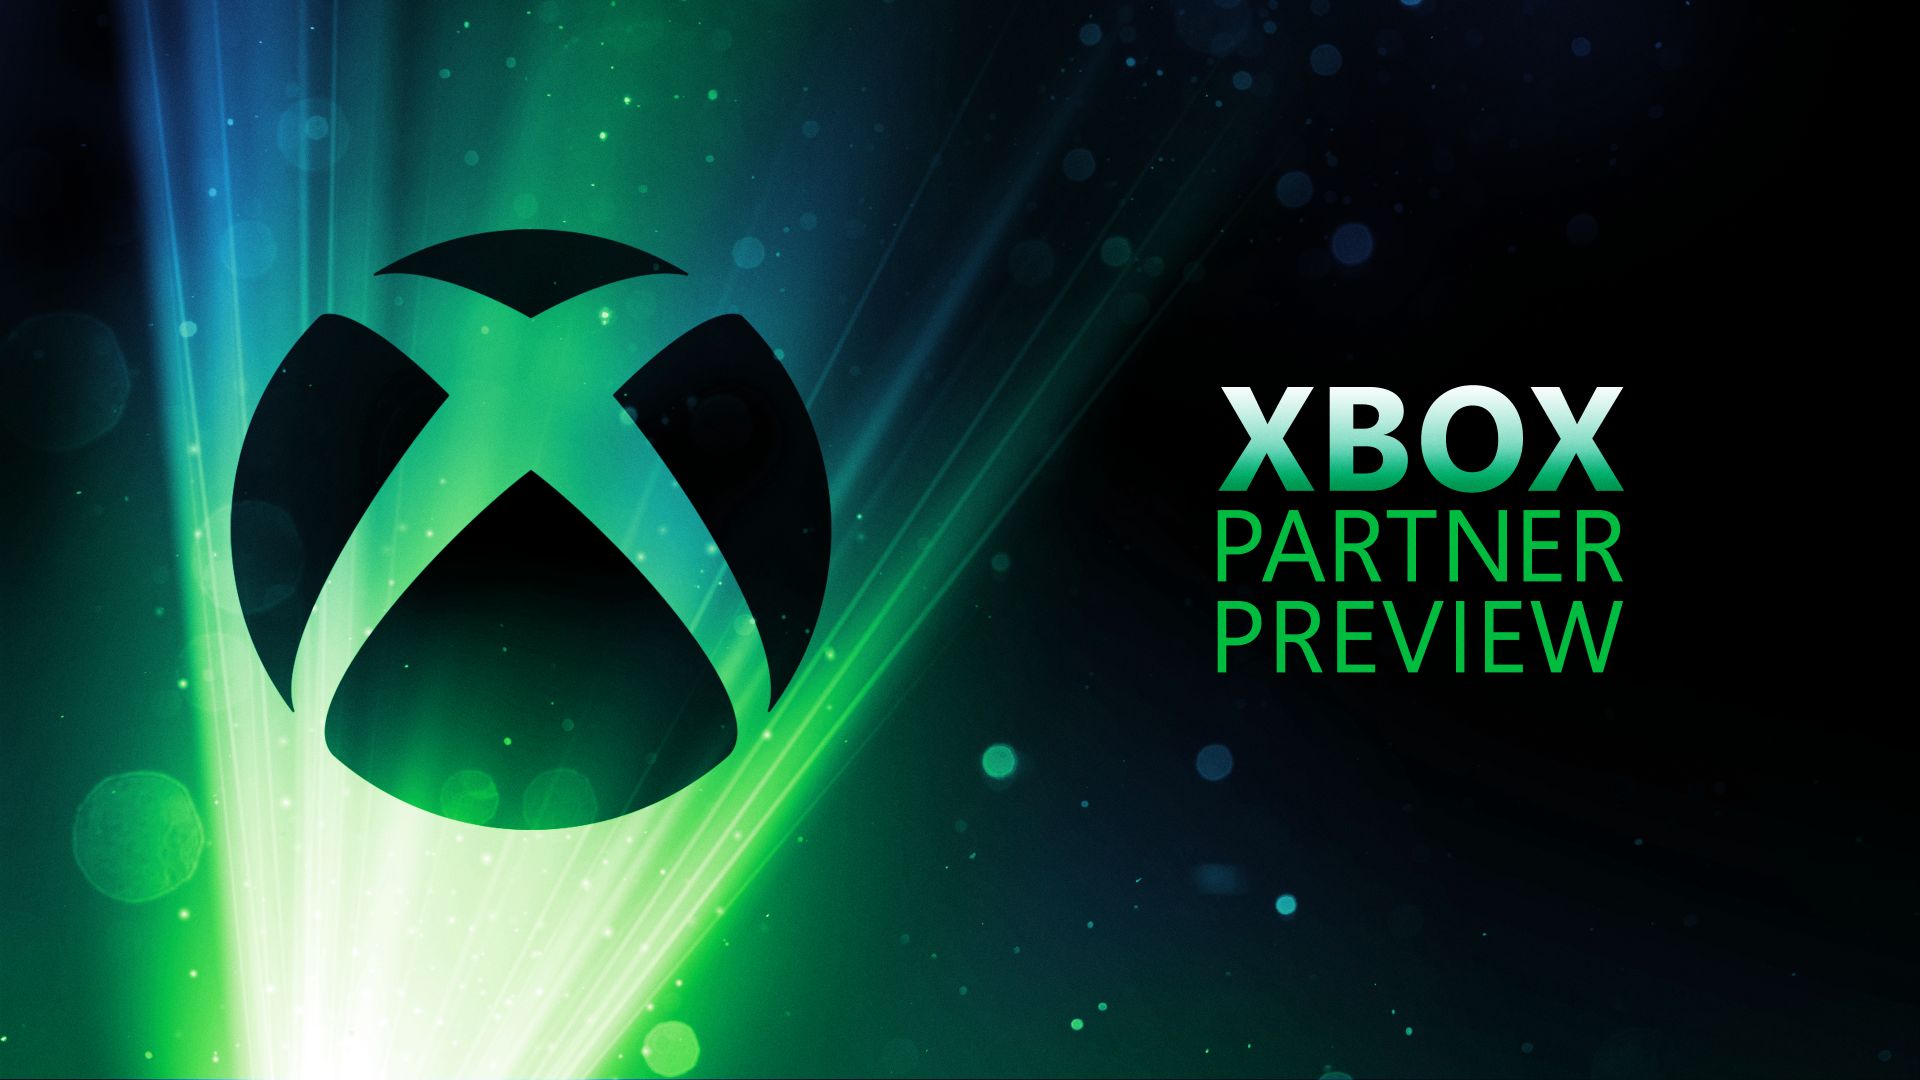 Bounty Star é novo jogo de ação que será lançado em 2023 e chegará ao Xbox